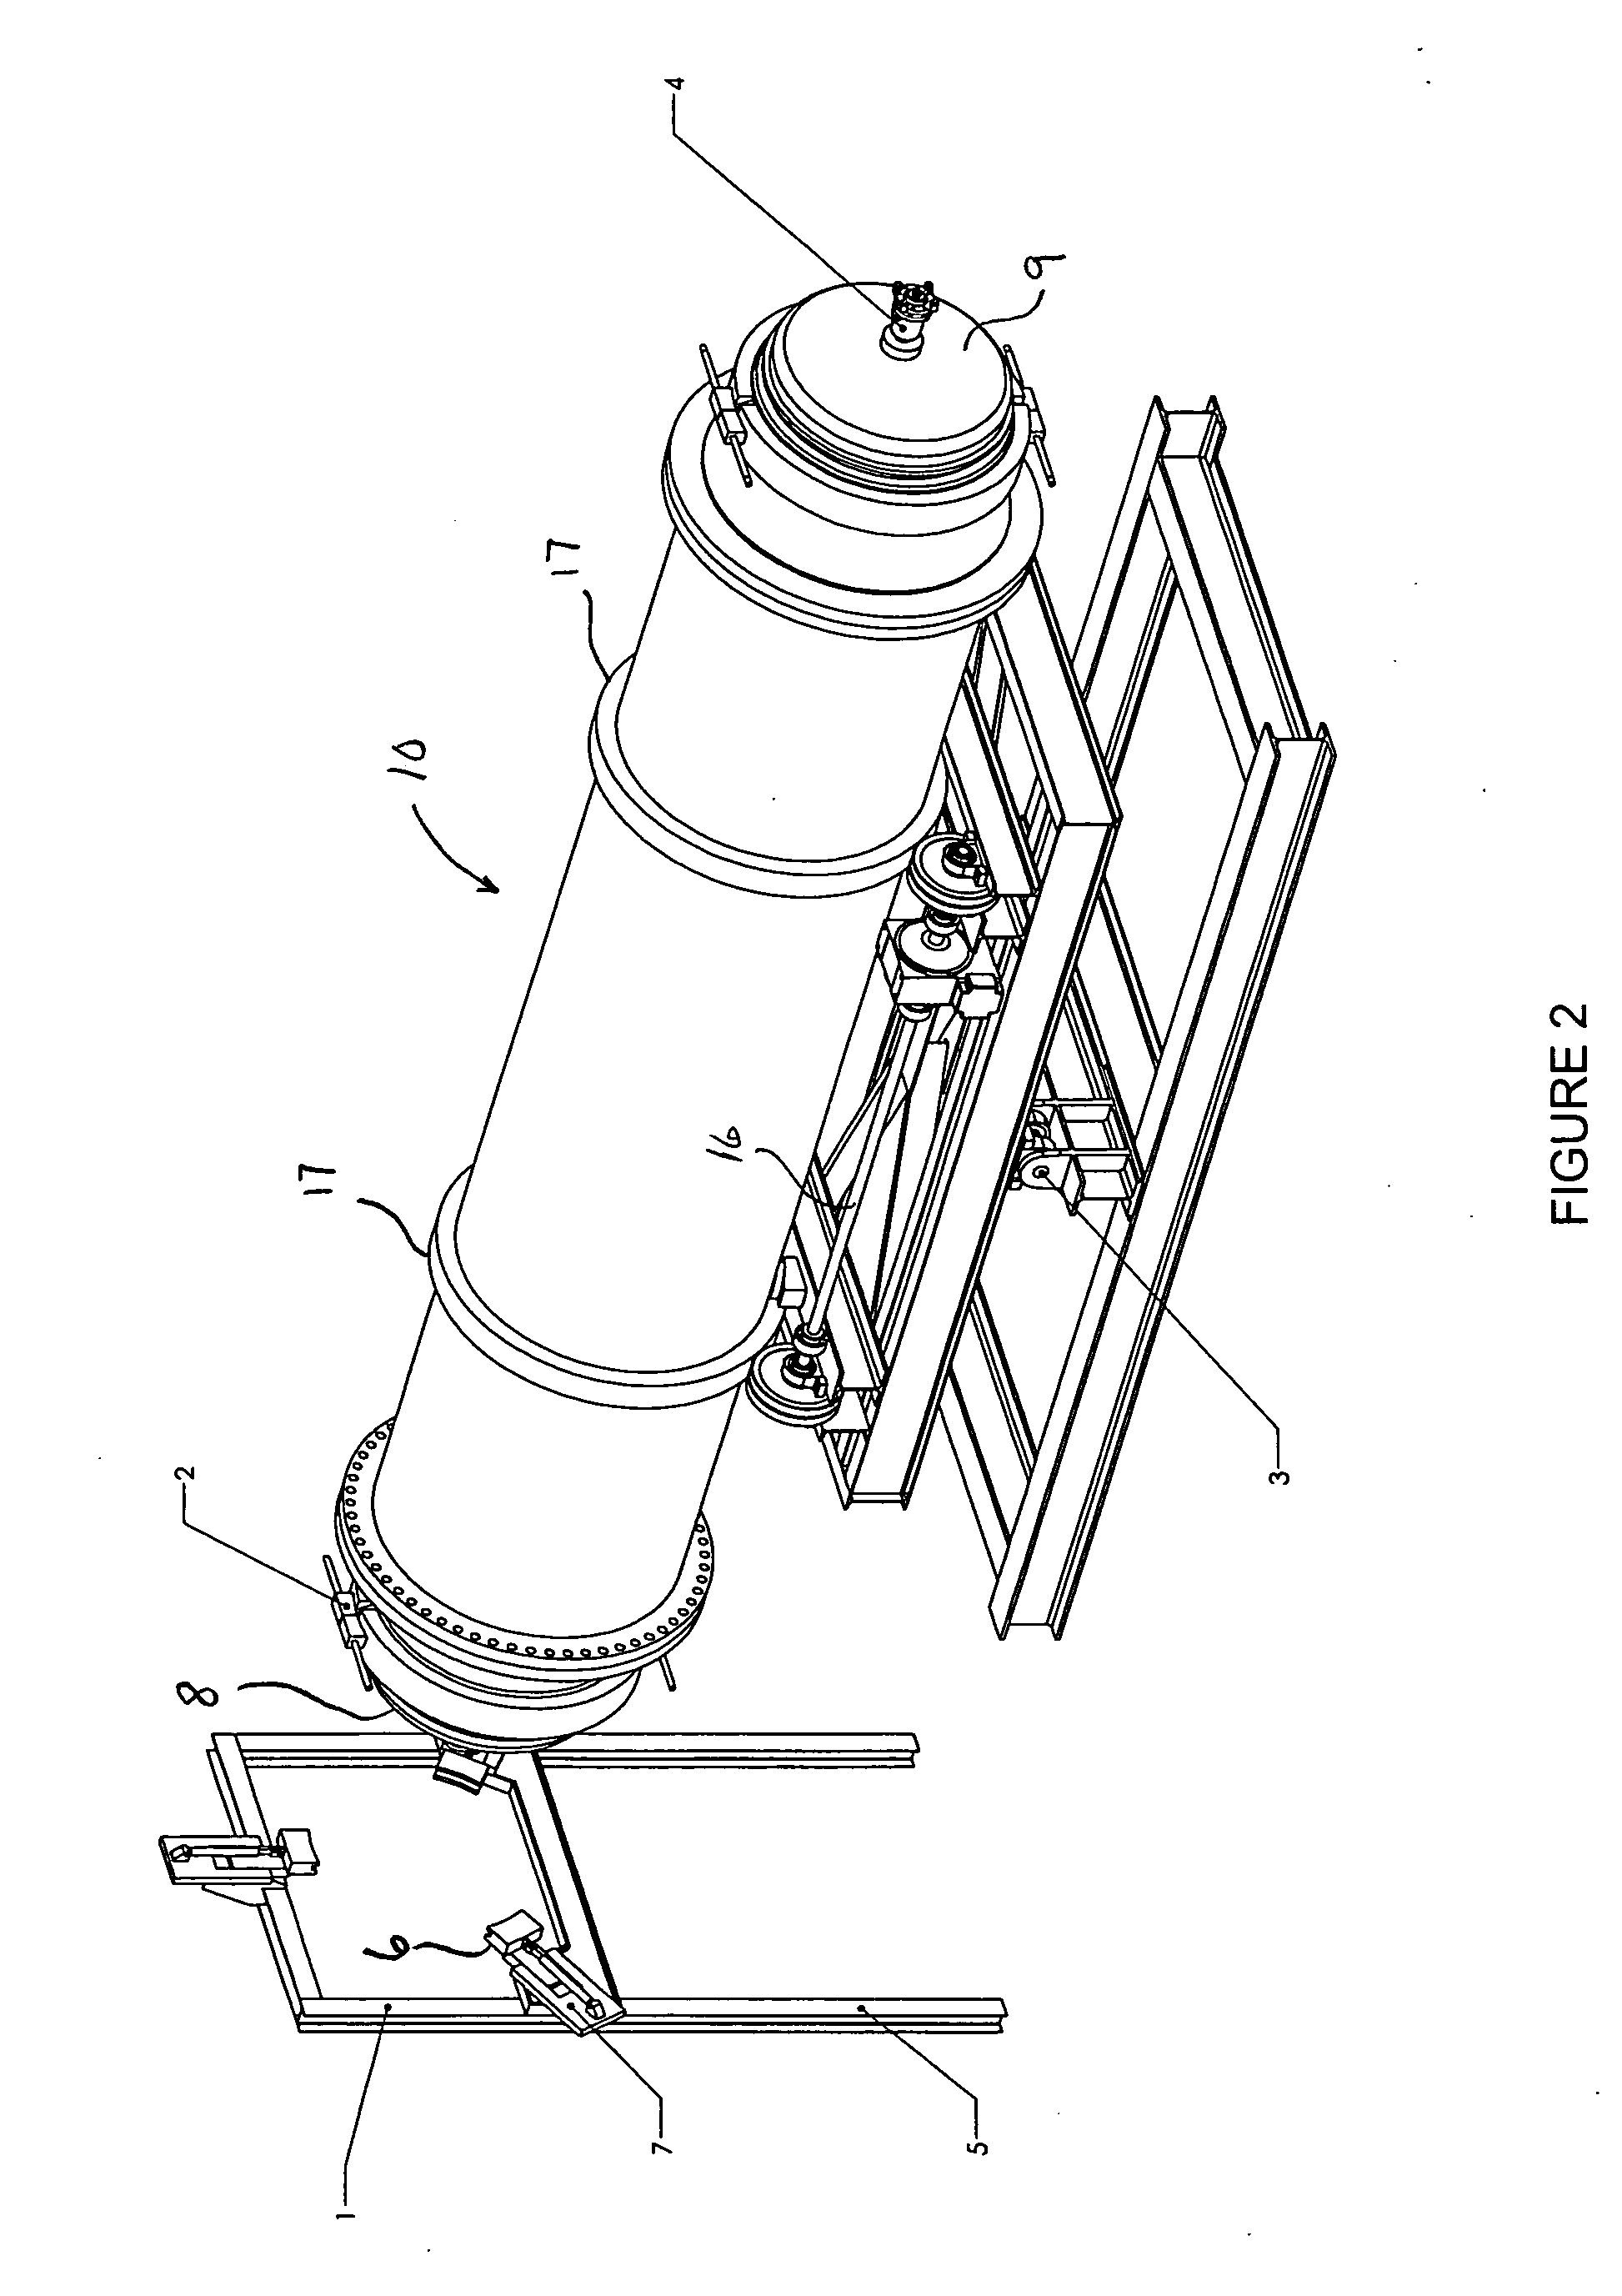 Waste treatment vessel featuring tilt mechanism and associated door arrangement